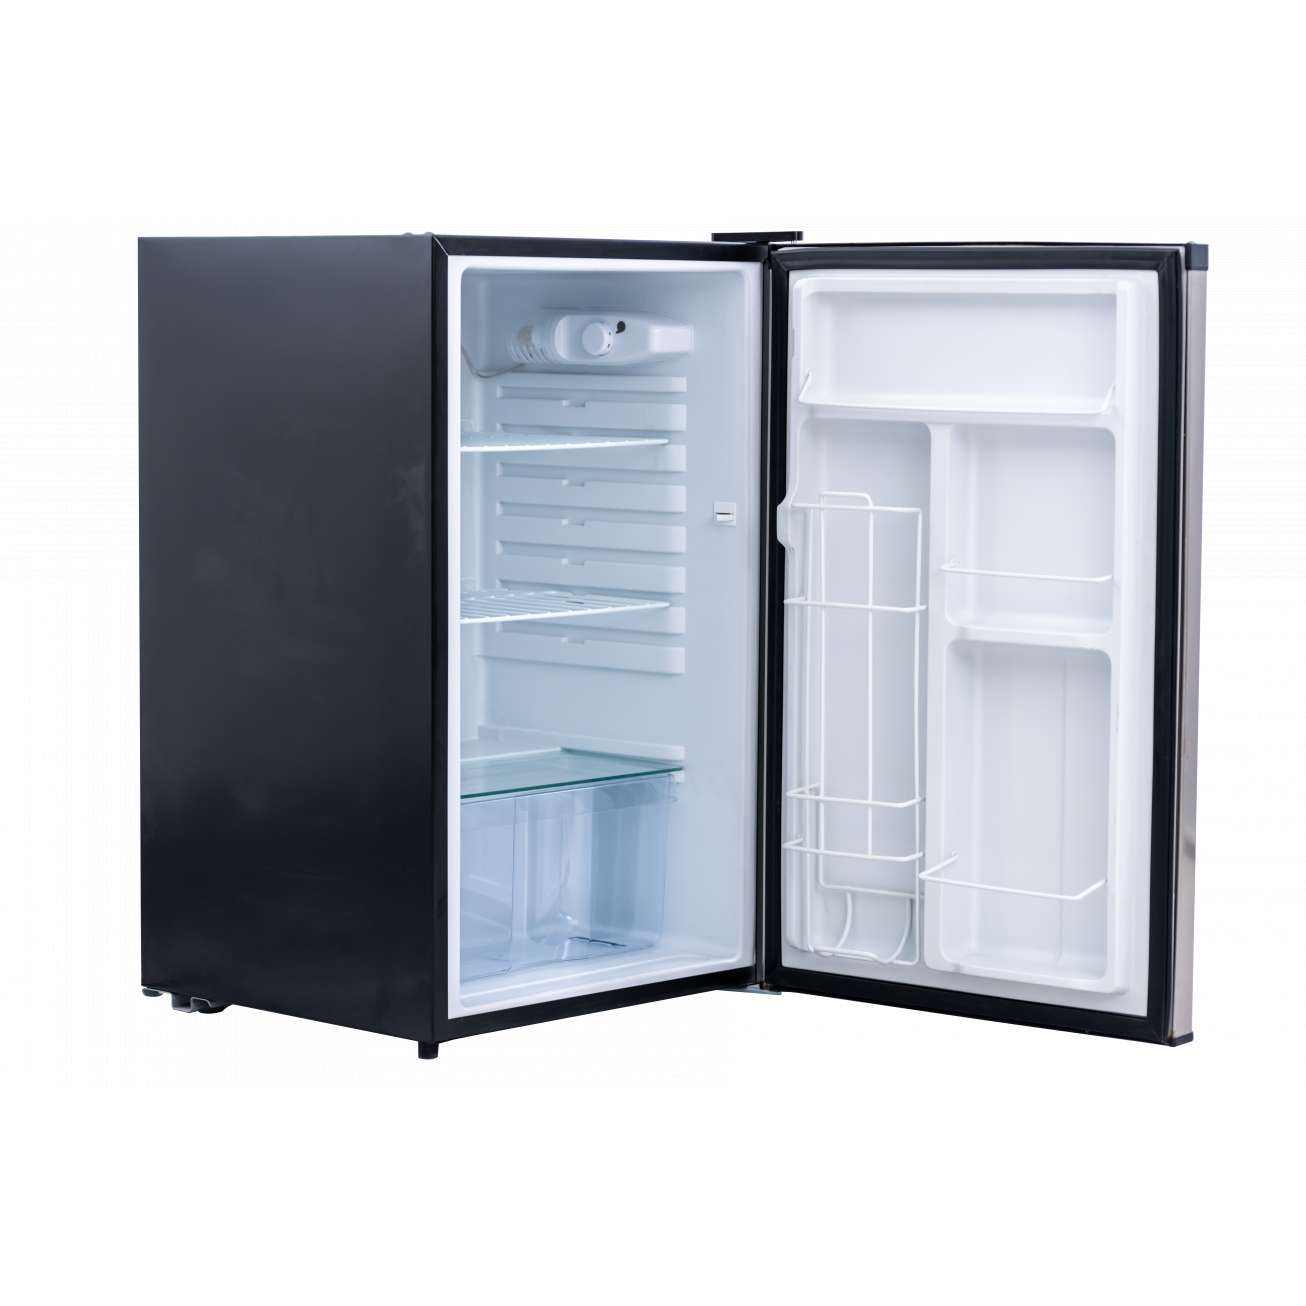 Sort kjøleskap fra Bull til utendørsbruk